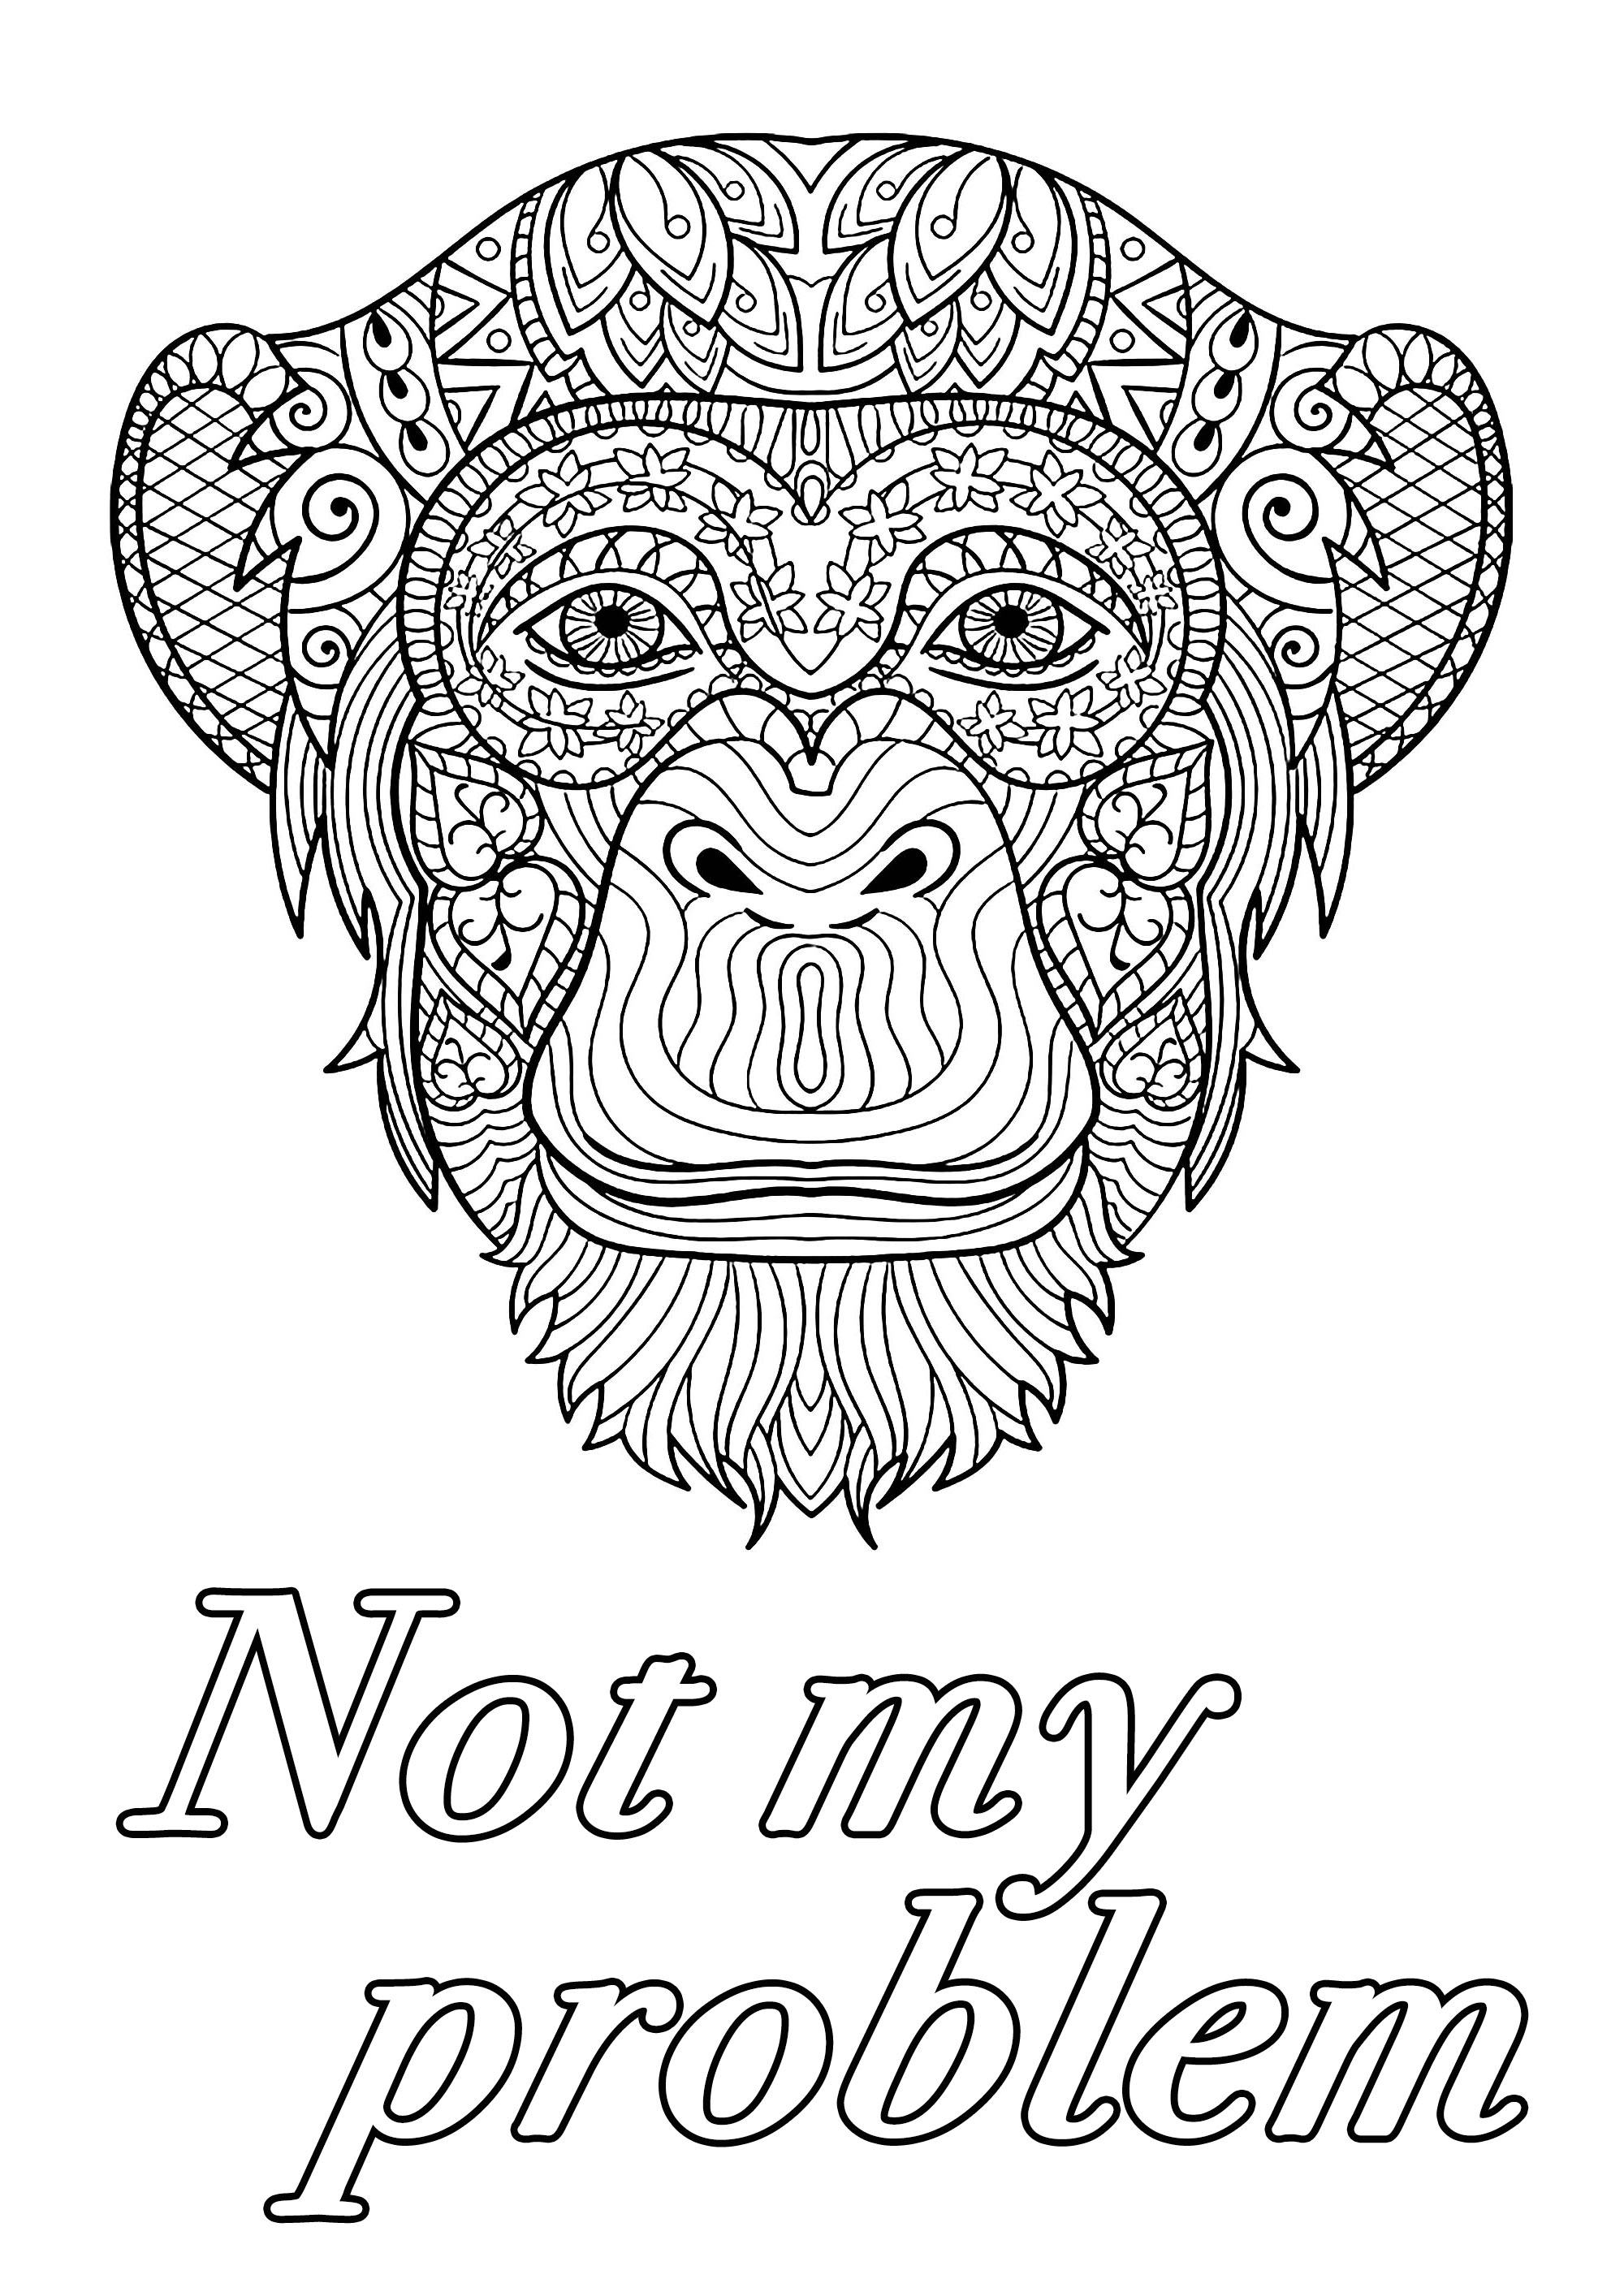 Non è un mio problema : Pagina da colorare di parolacce con una grande testa di scimmia